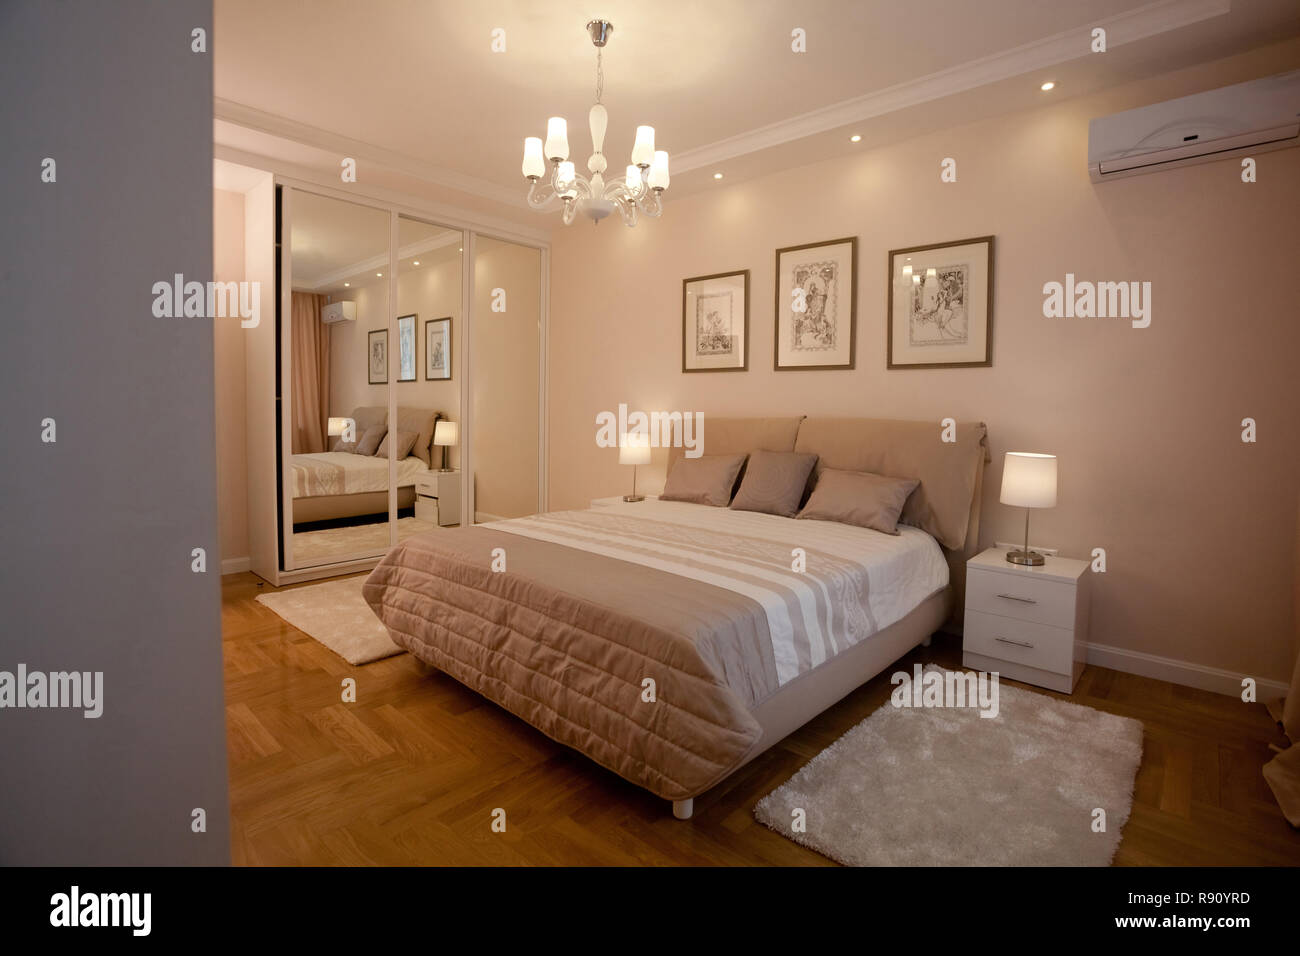 Epmty minimalistischen Interieur Hintergrund, Schlafzimmer, modernes Apartment mit großen Spiegeln, Doppelbett, Lichter auf, niemand, mit Kopie Raum, horizontal Stockfoto